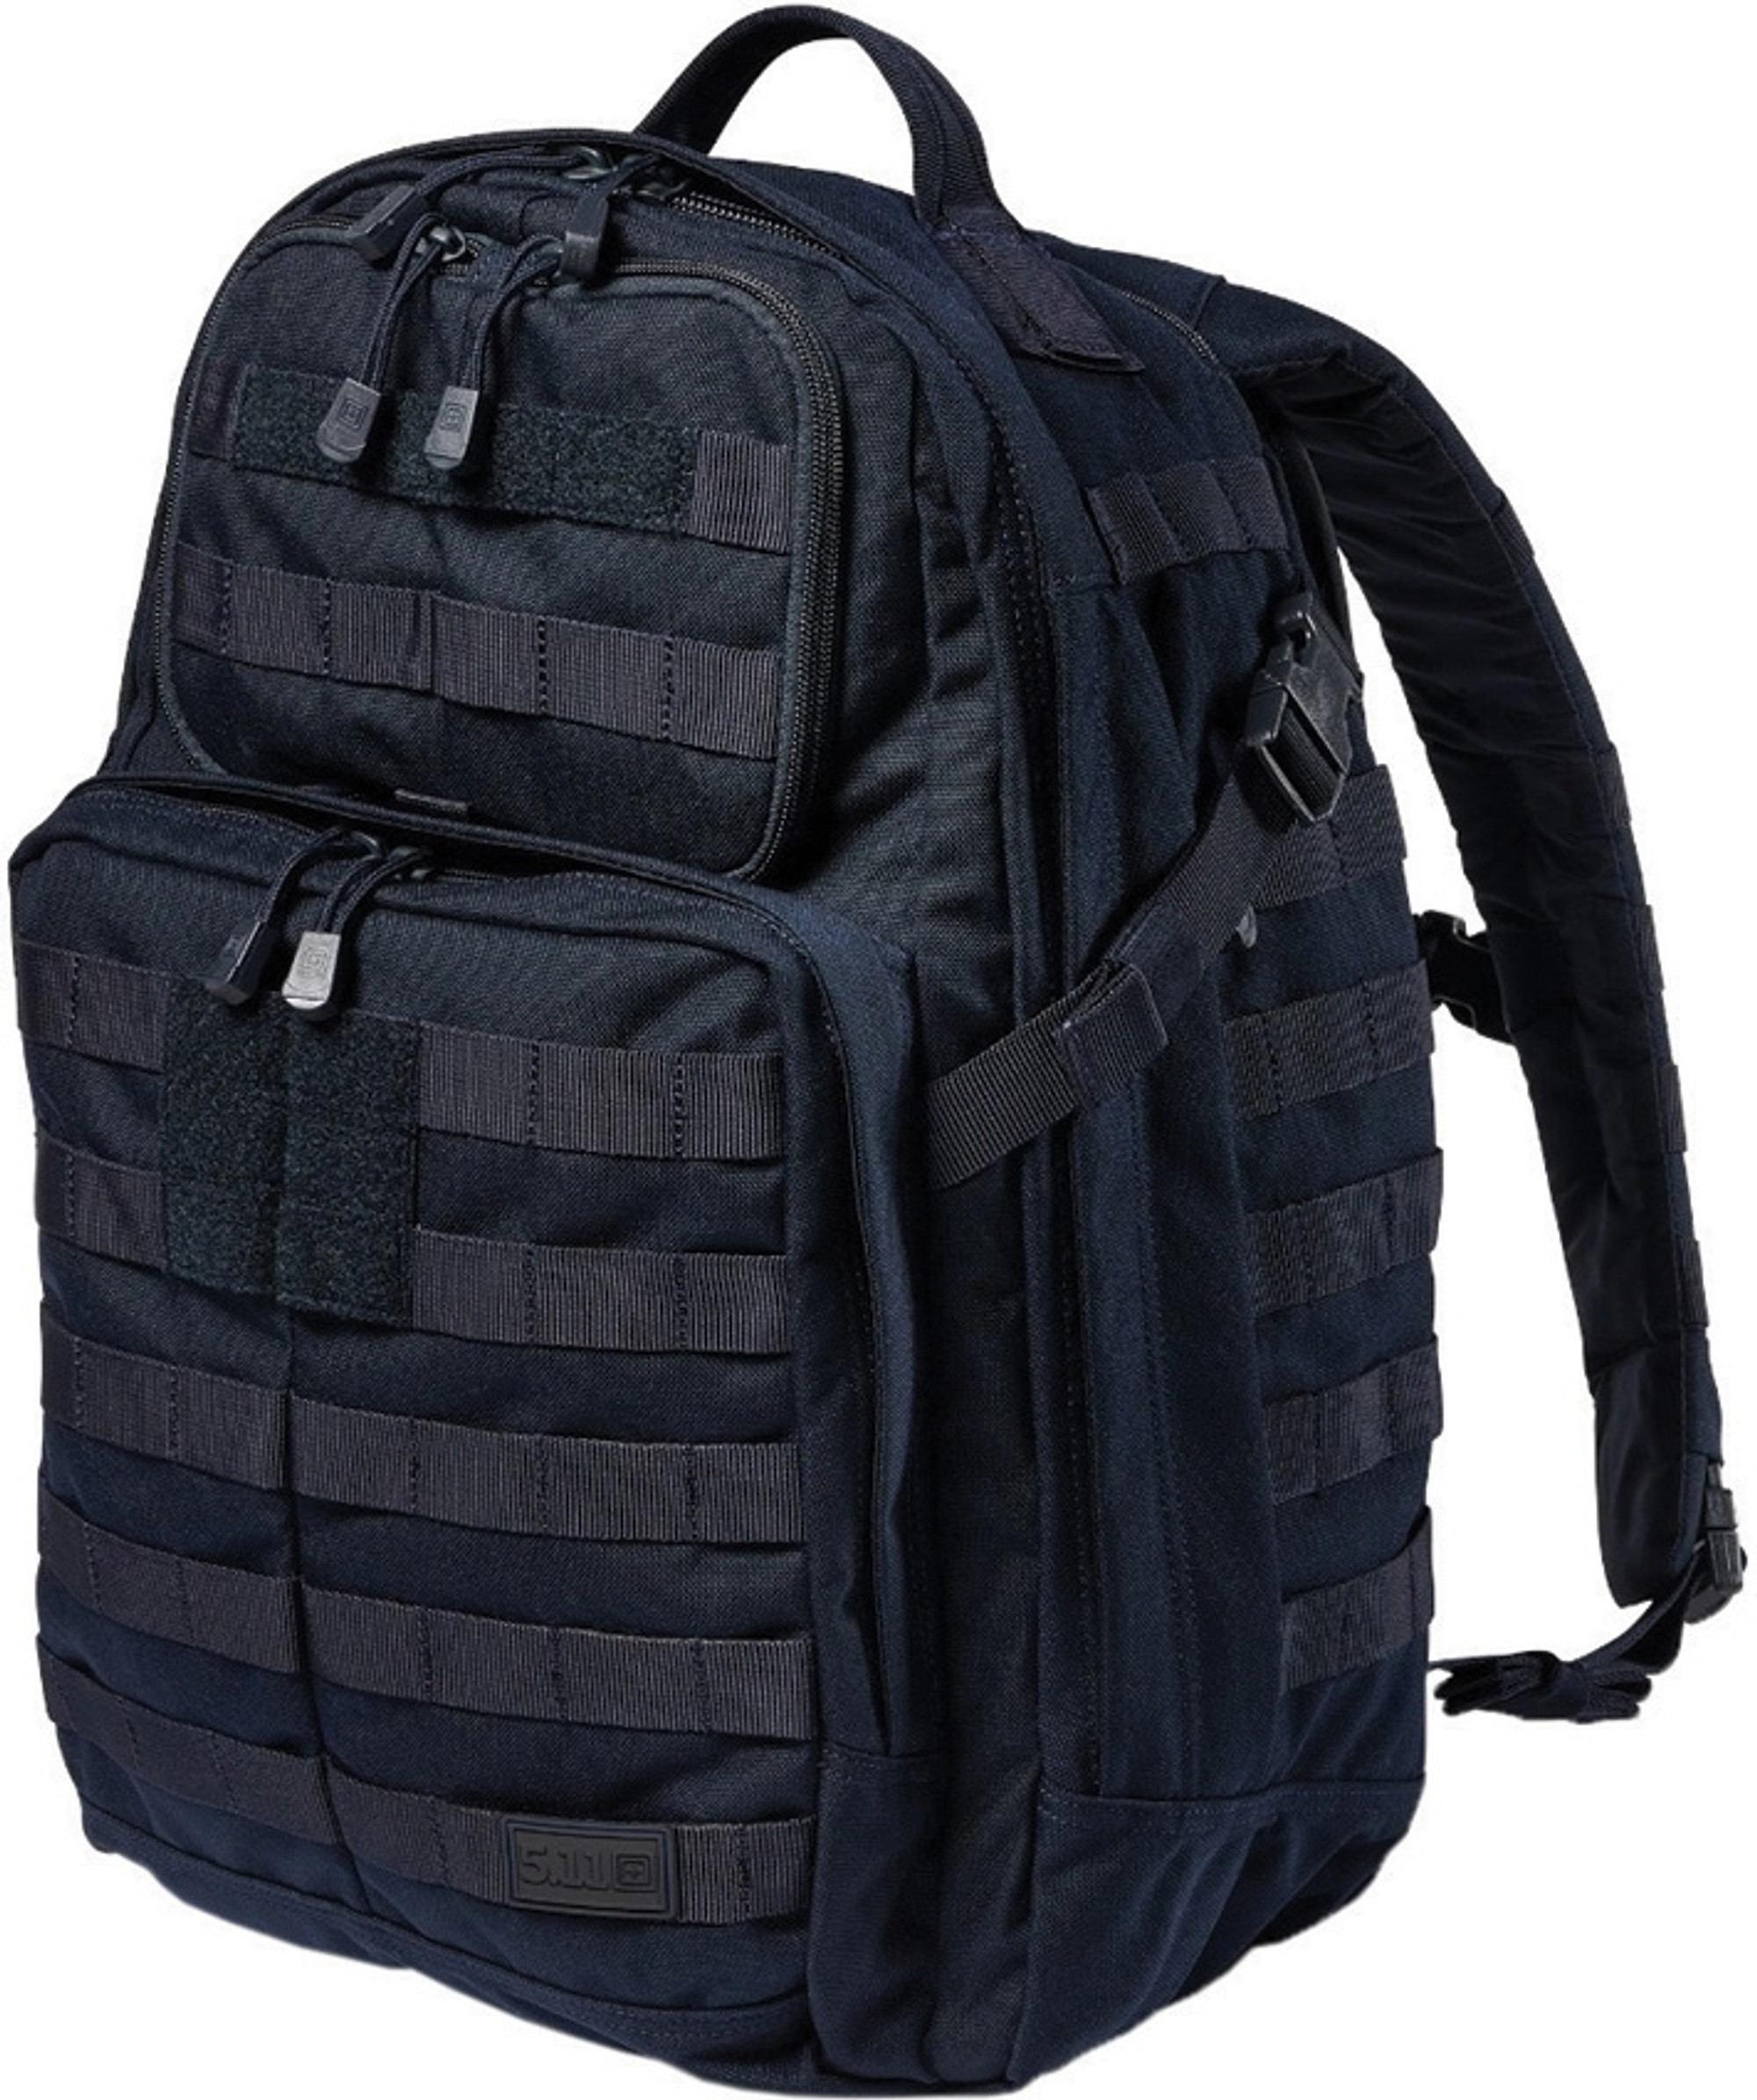 Rush24 2.0 Backpack FTL56563724